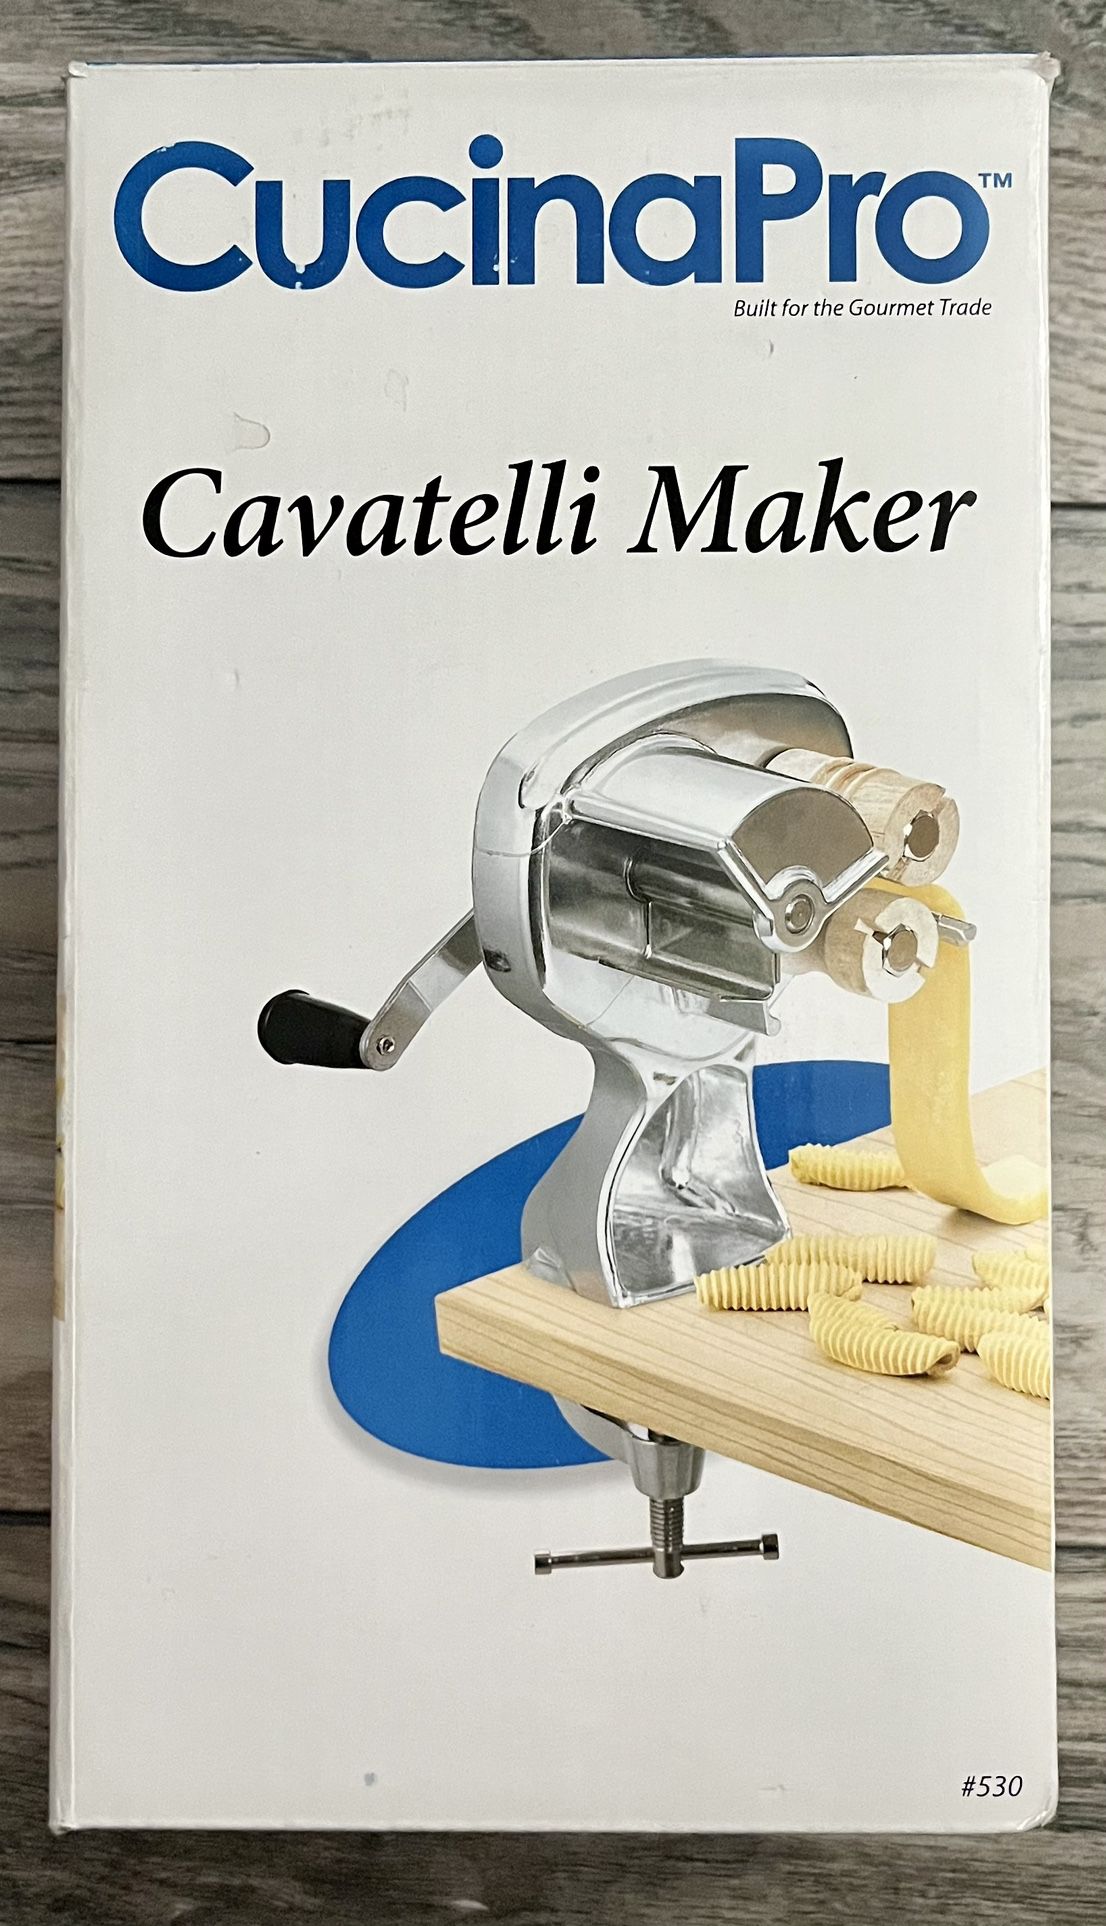 Cucina Pro Cavatelli Maker NEW in Box